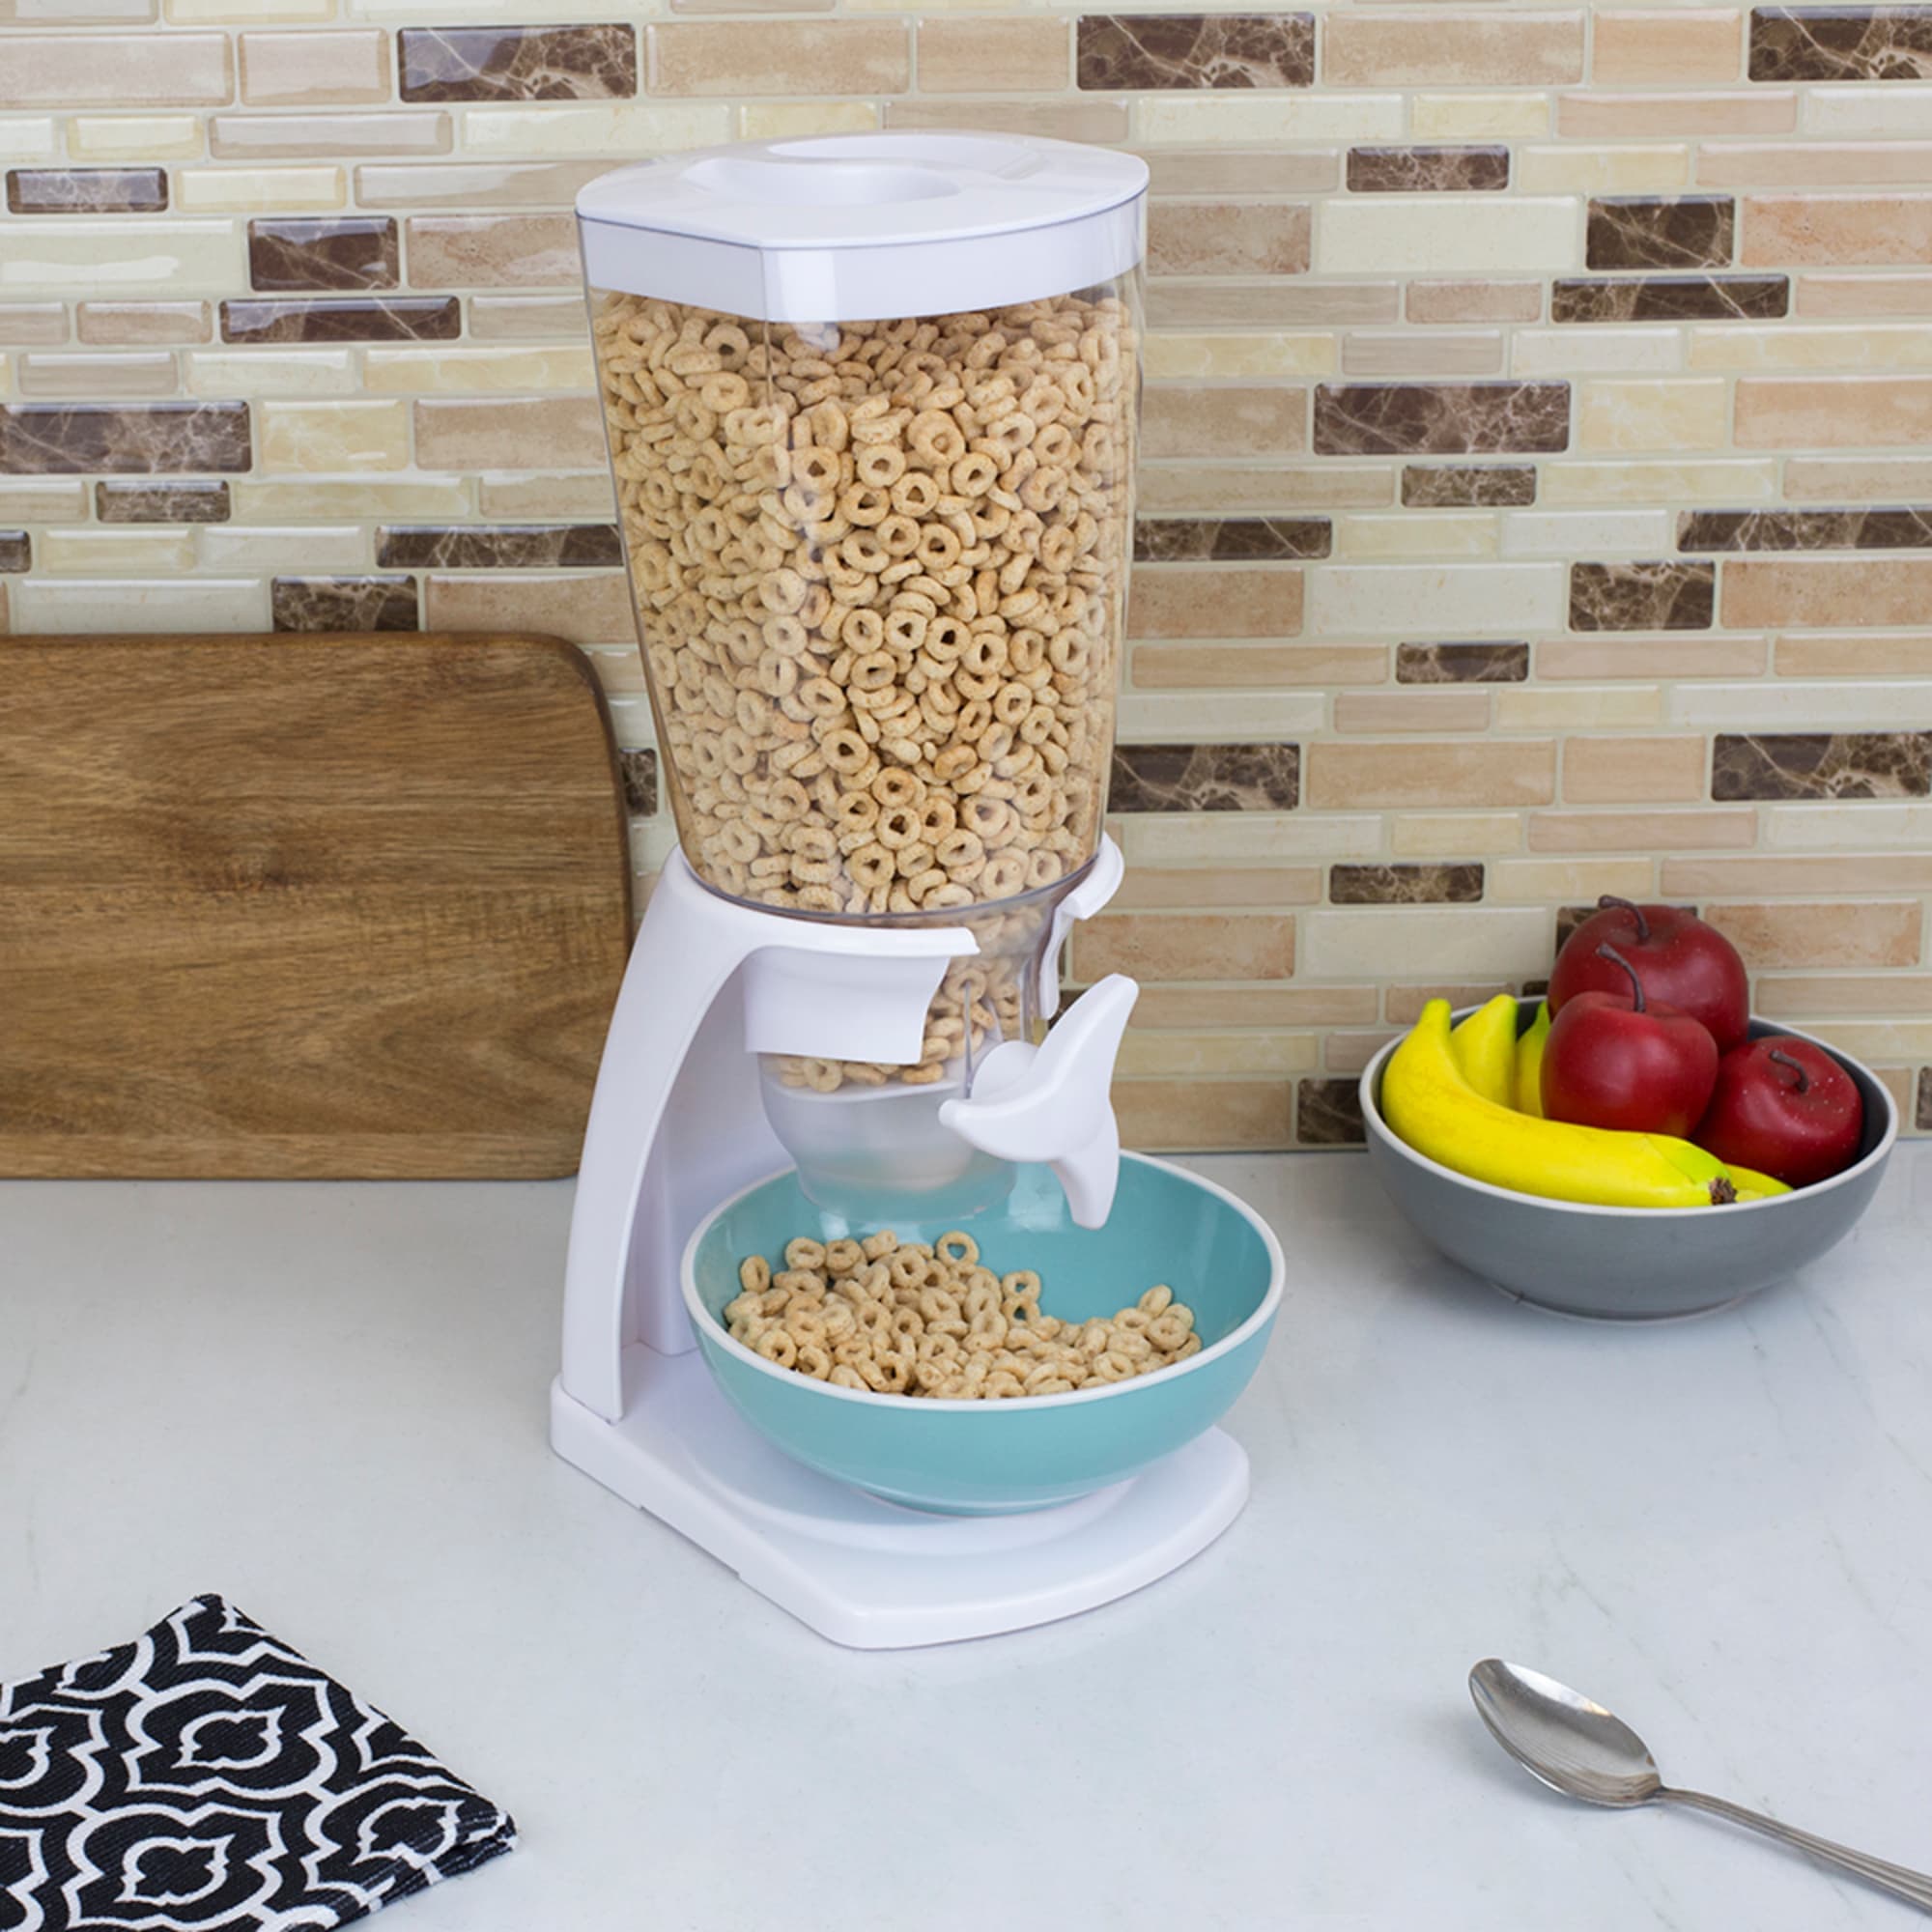 Home Basics Single Cereal Dispenser, White $8.00 EACH, CASE PACK OF 6